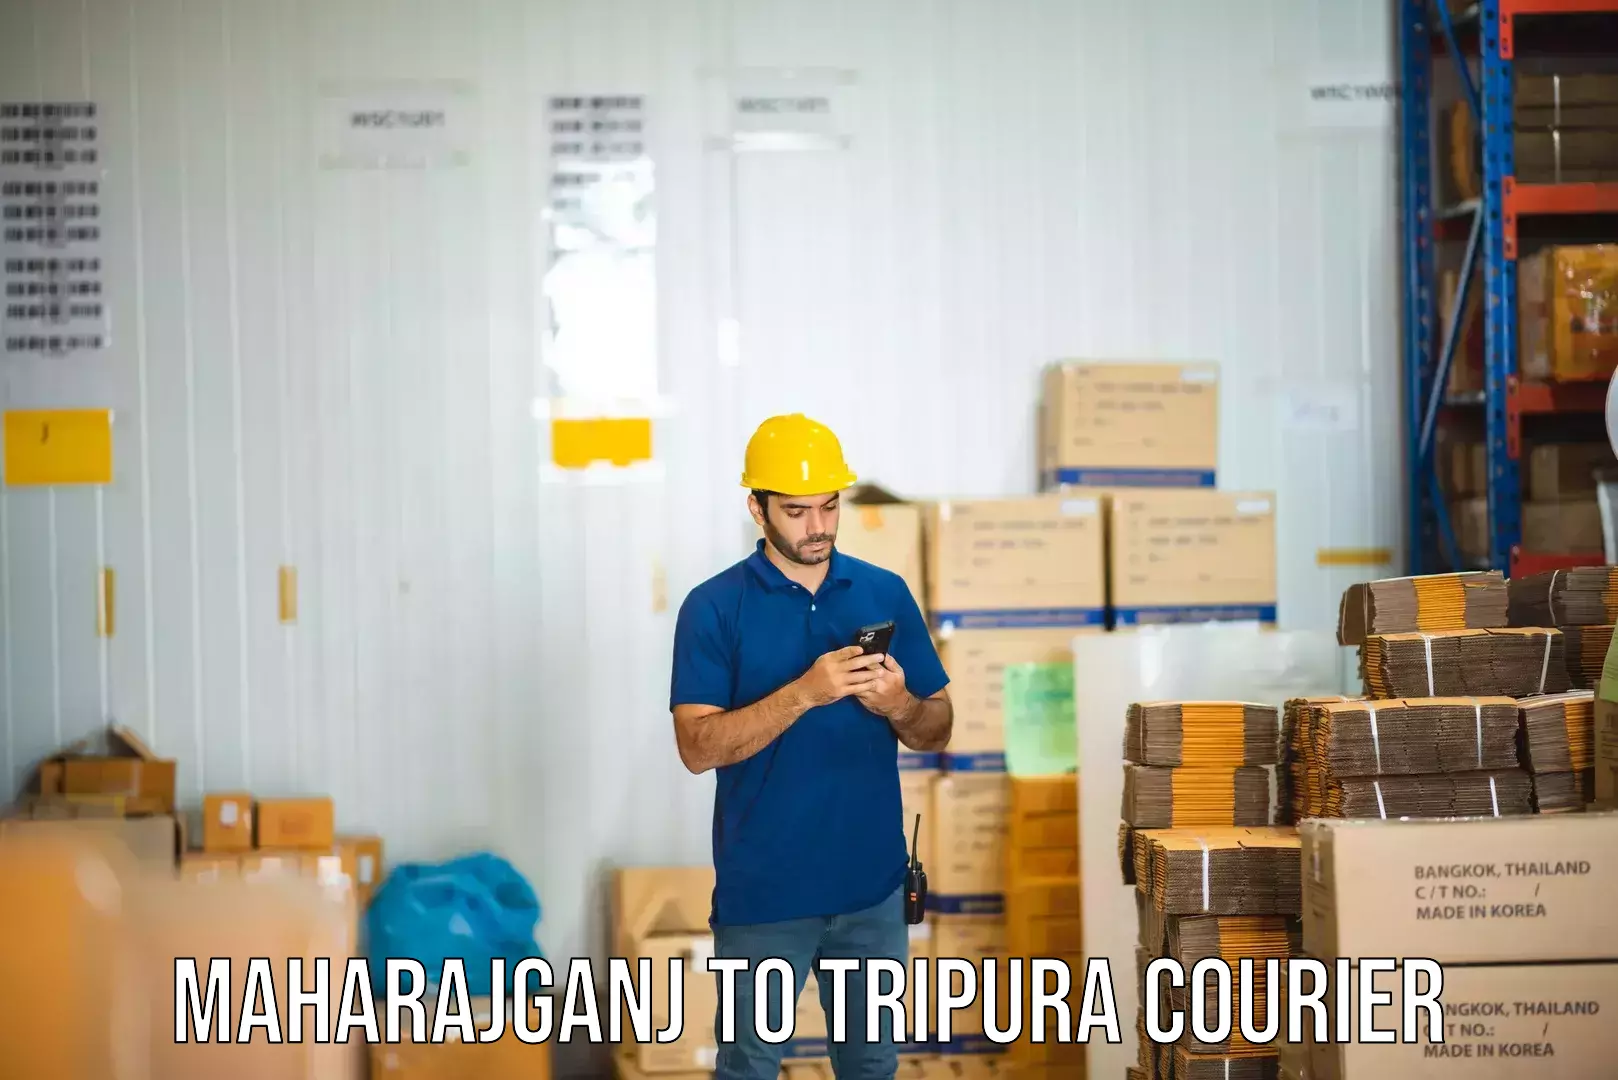 Holiday shipping services Maharajganj to Tripura